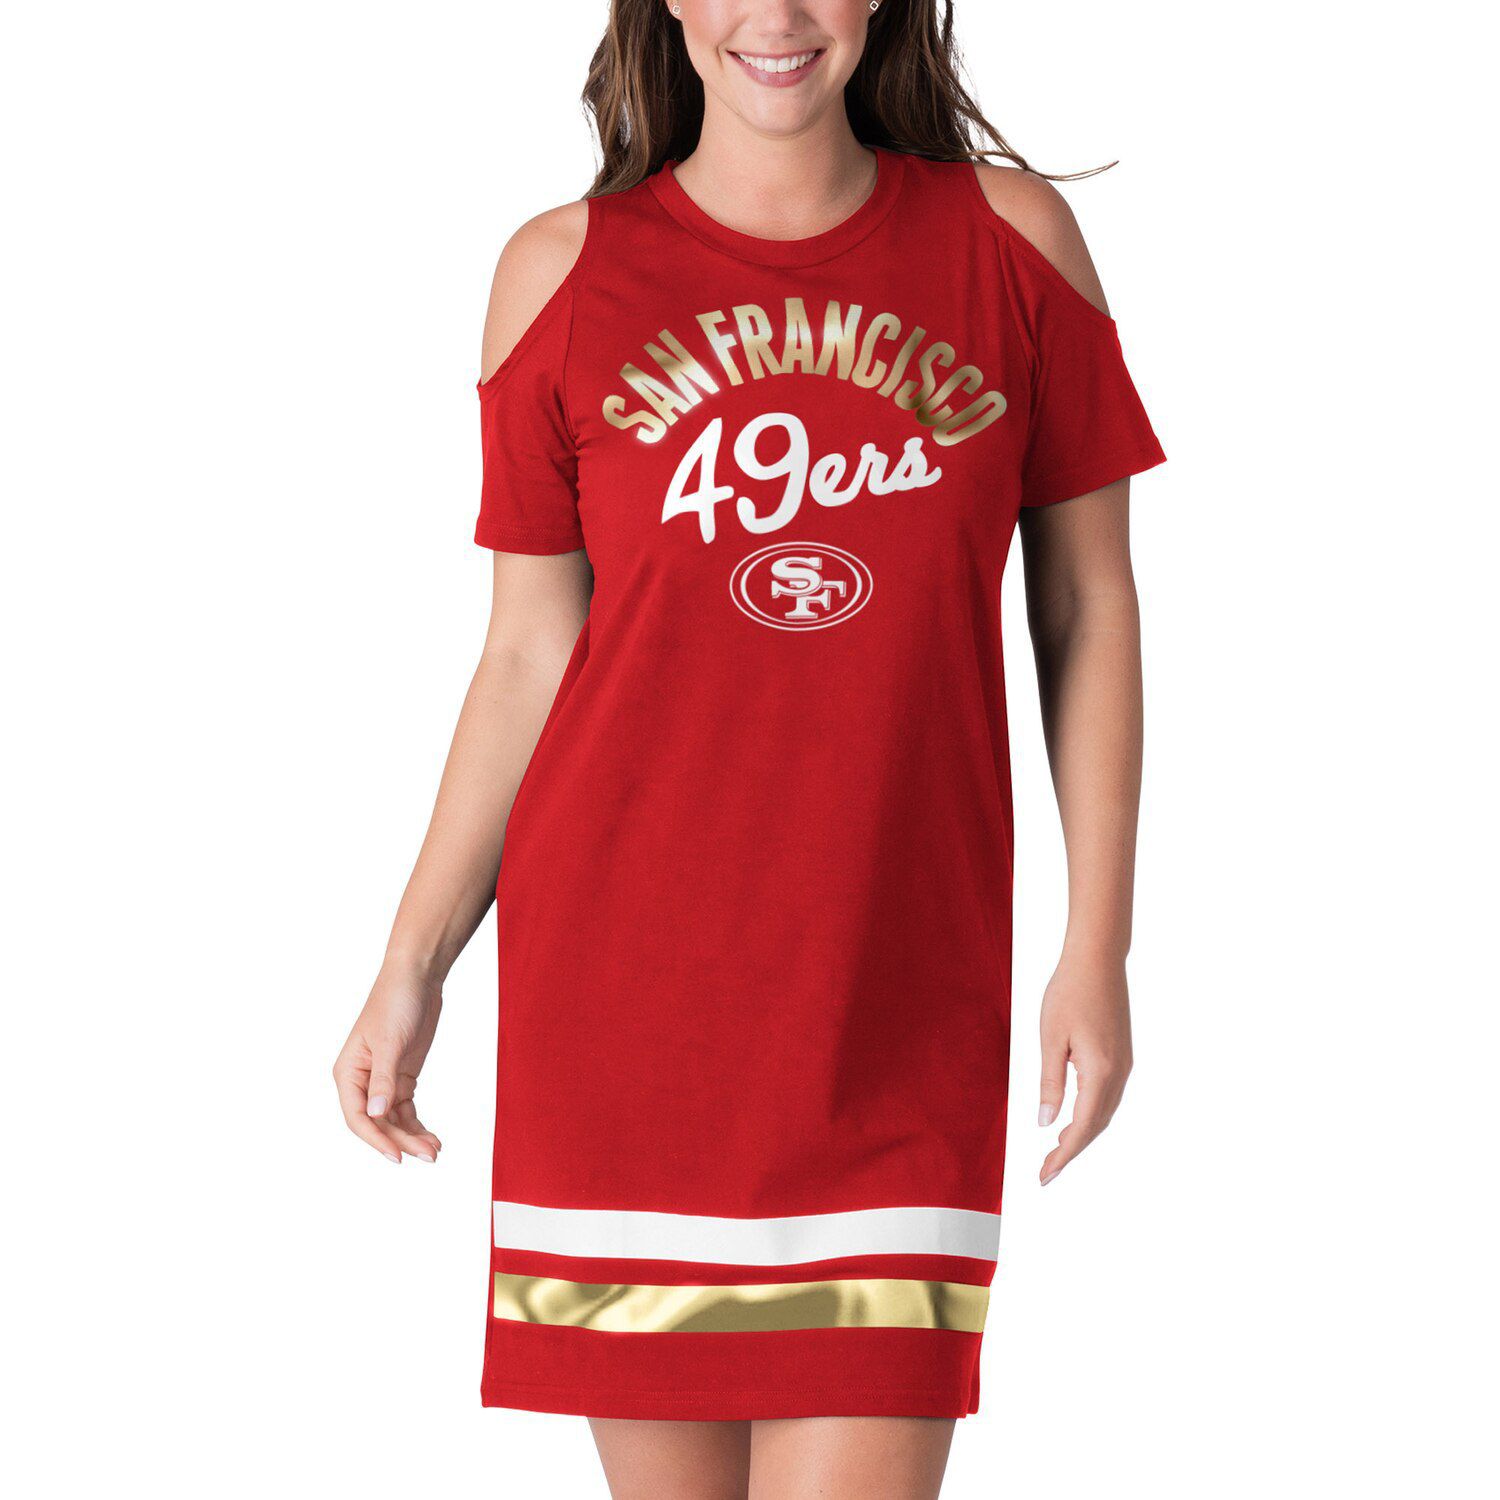 49ers womens jersey dress